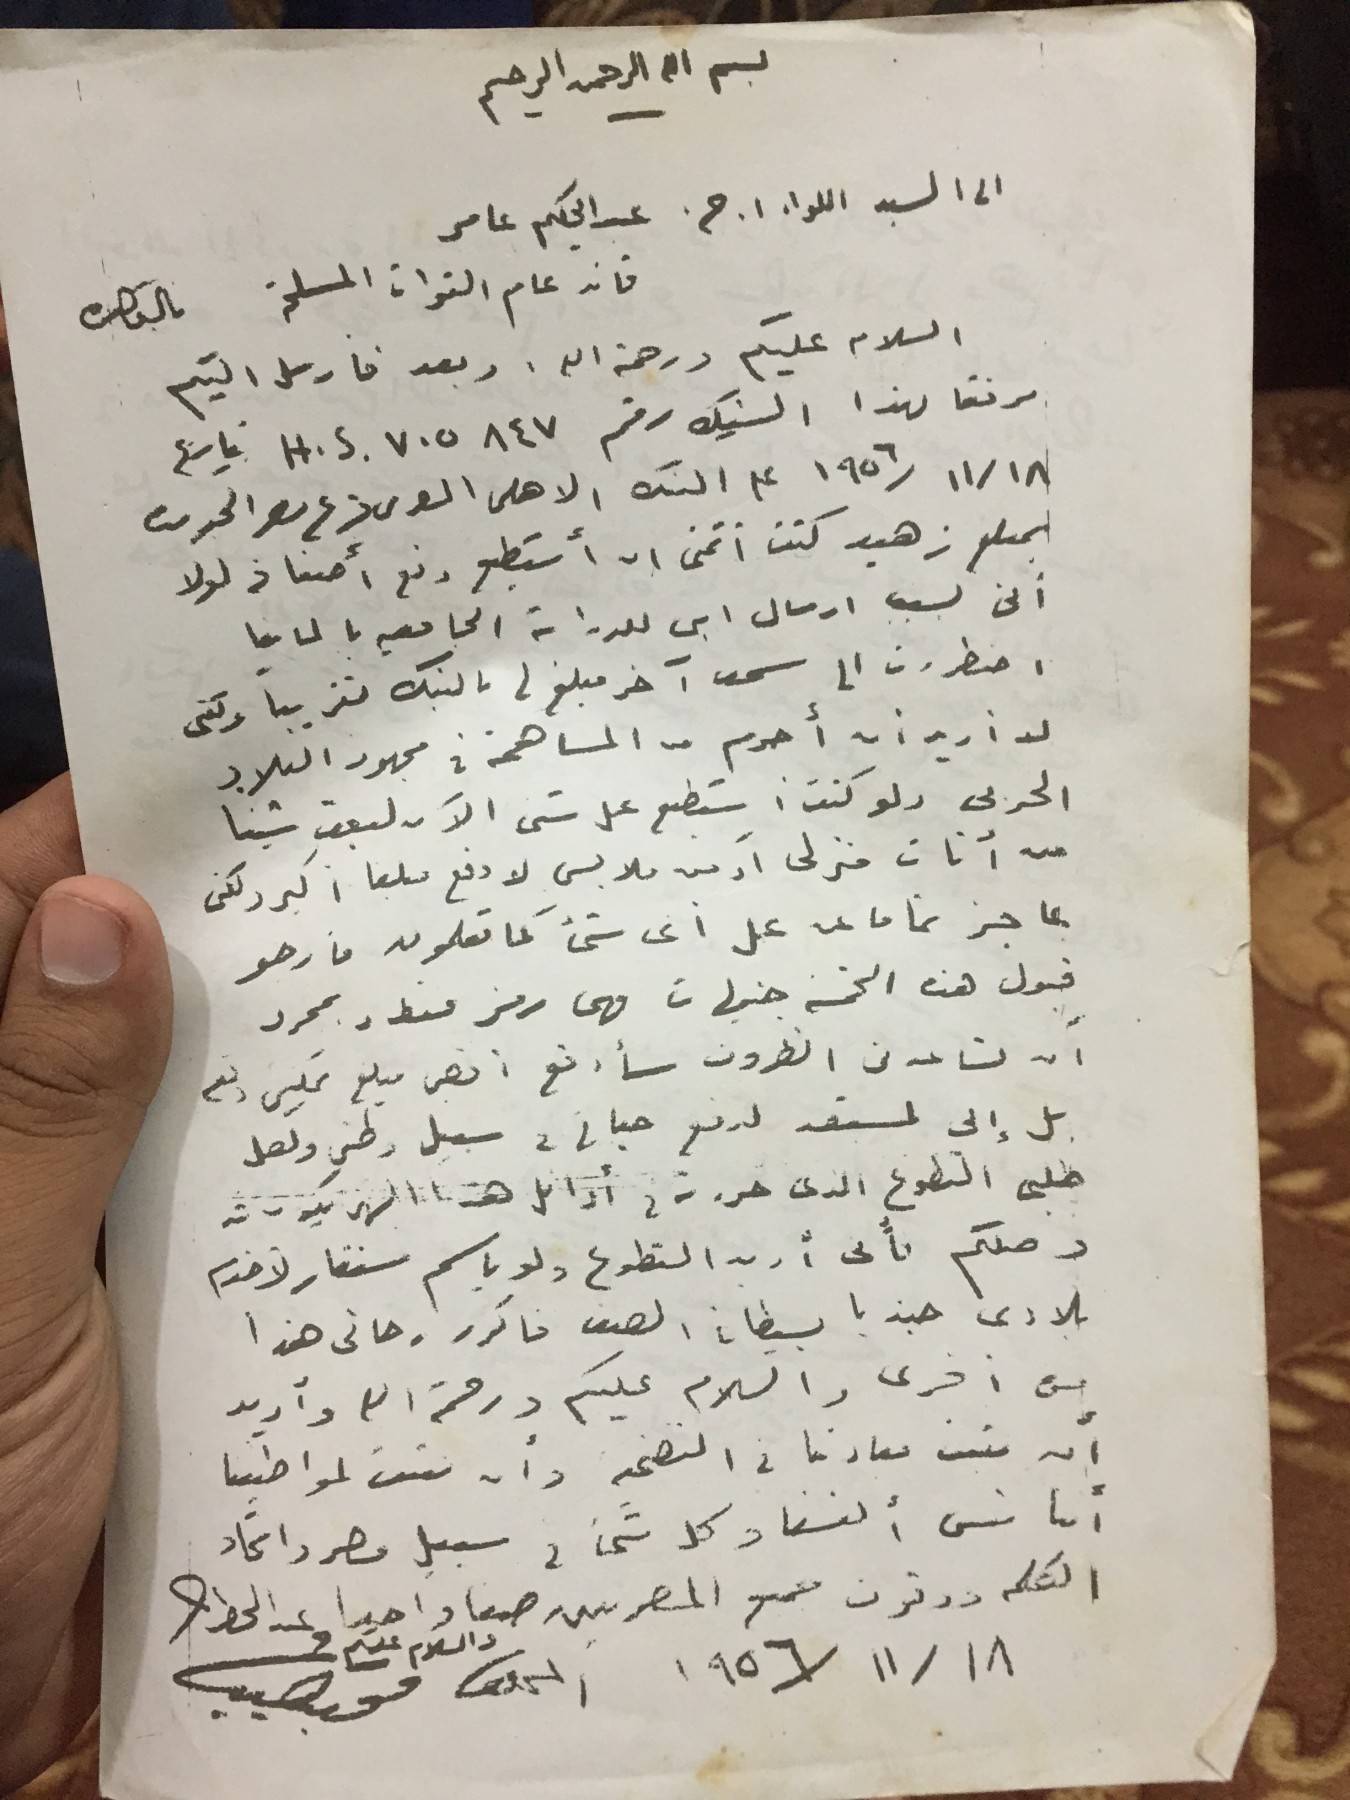  رسالة الرئيس محمد نجيب للرئيس جمال عبد الناصر (10)